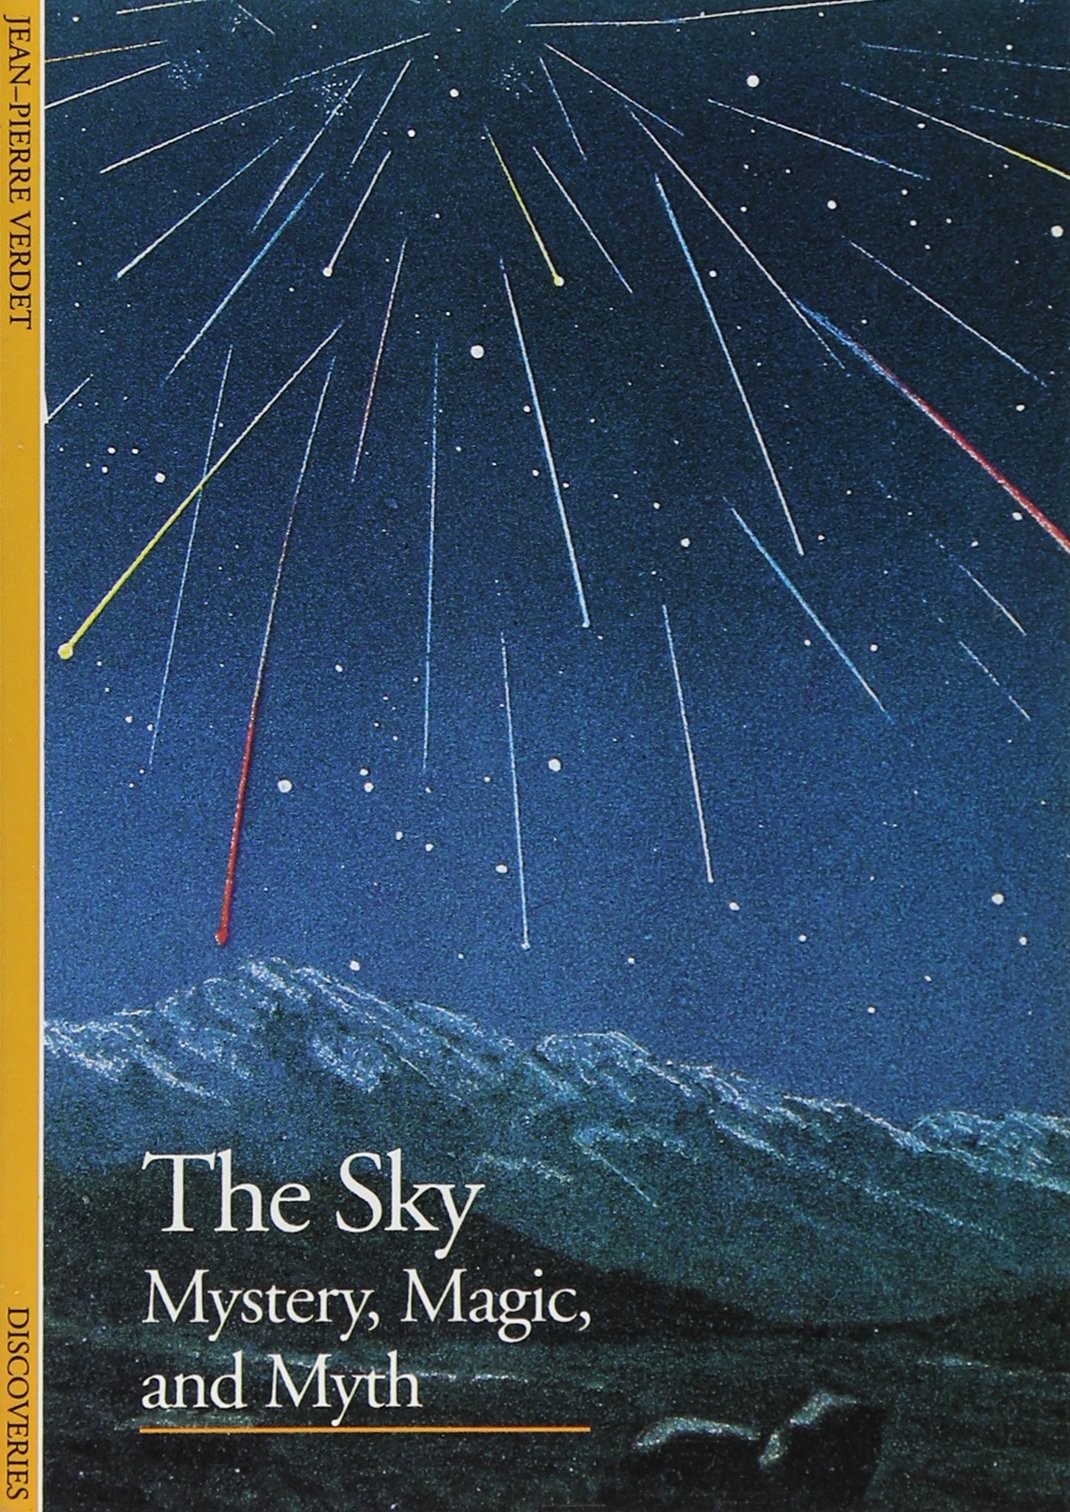 The Sky: Mystery, Magic, and Myth